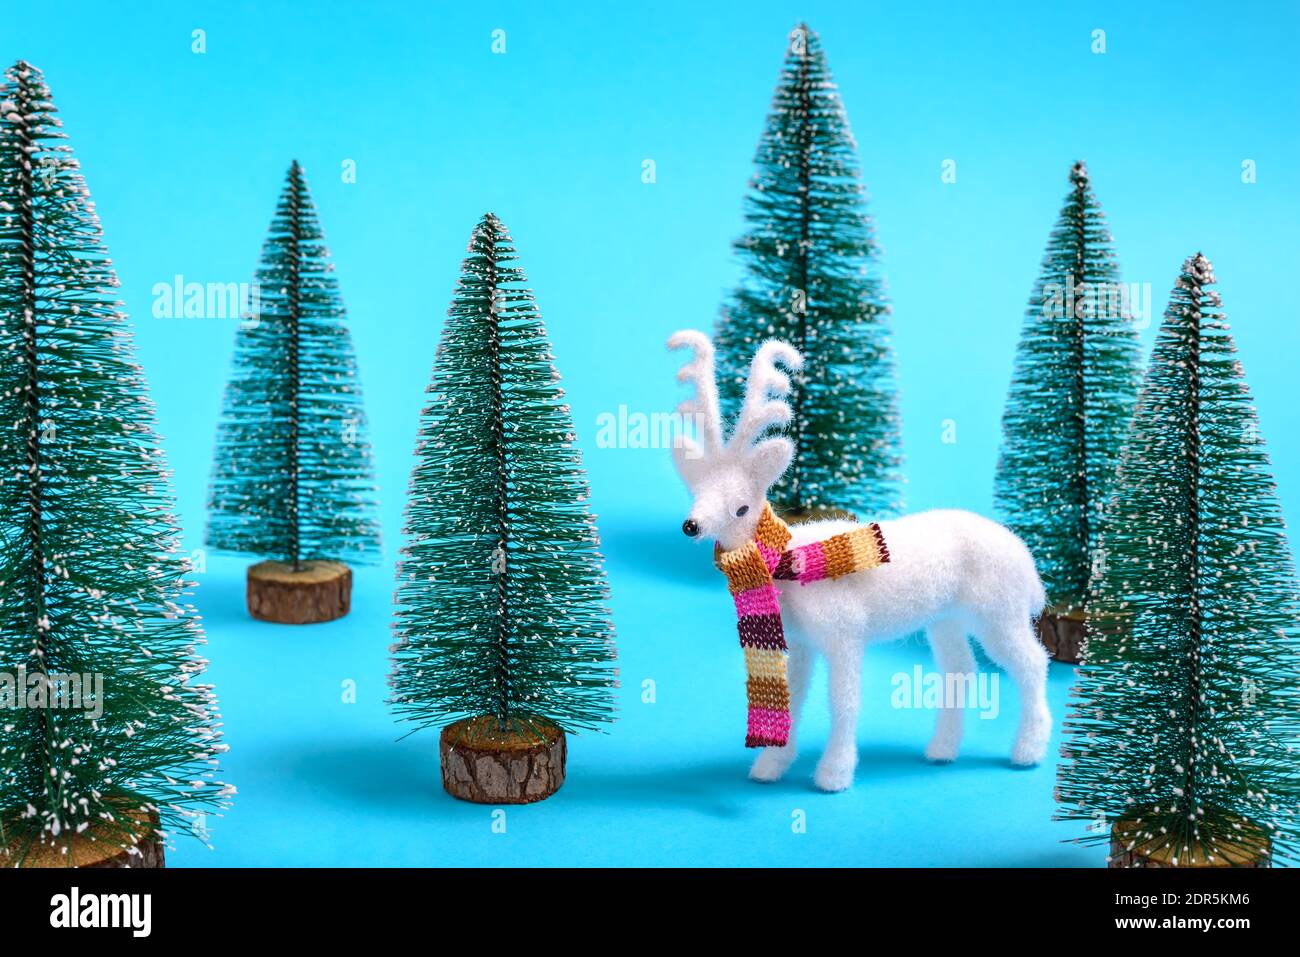 Kreatives Winter- und Weihnachtskonzept von weißen Rentieren mit einem bunten Schal in einem Tannenwald auf pastellblauem Hintergrund. Stockfoto